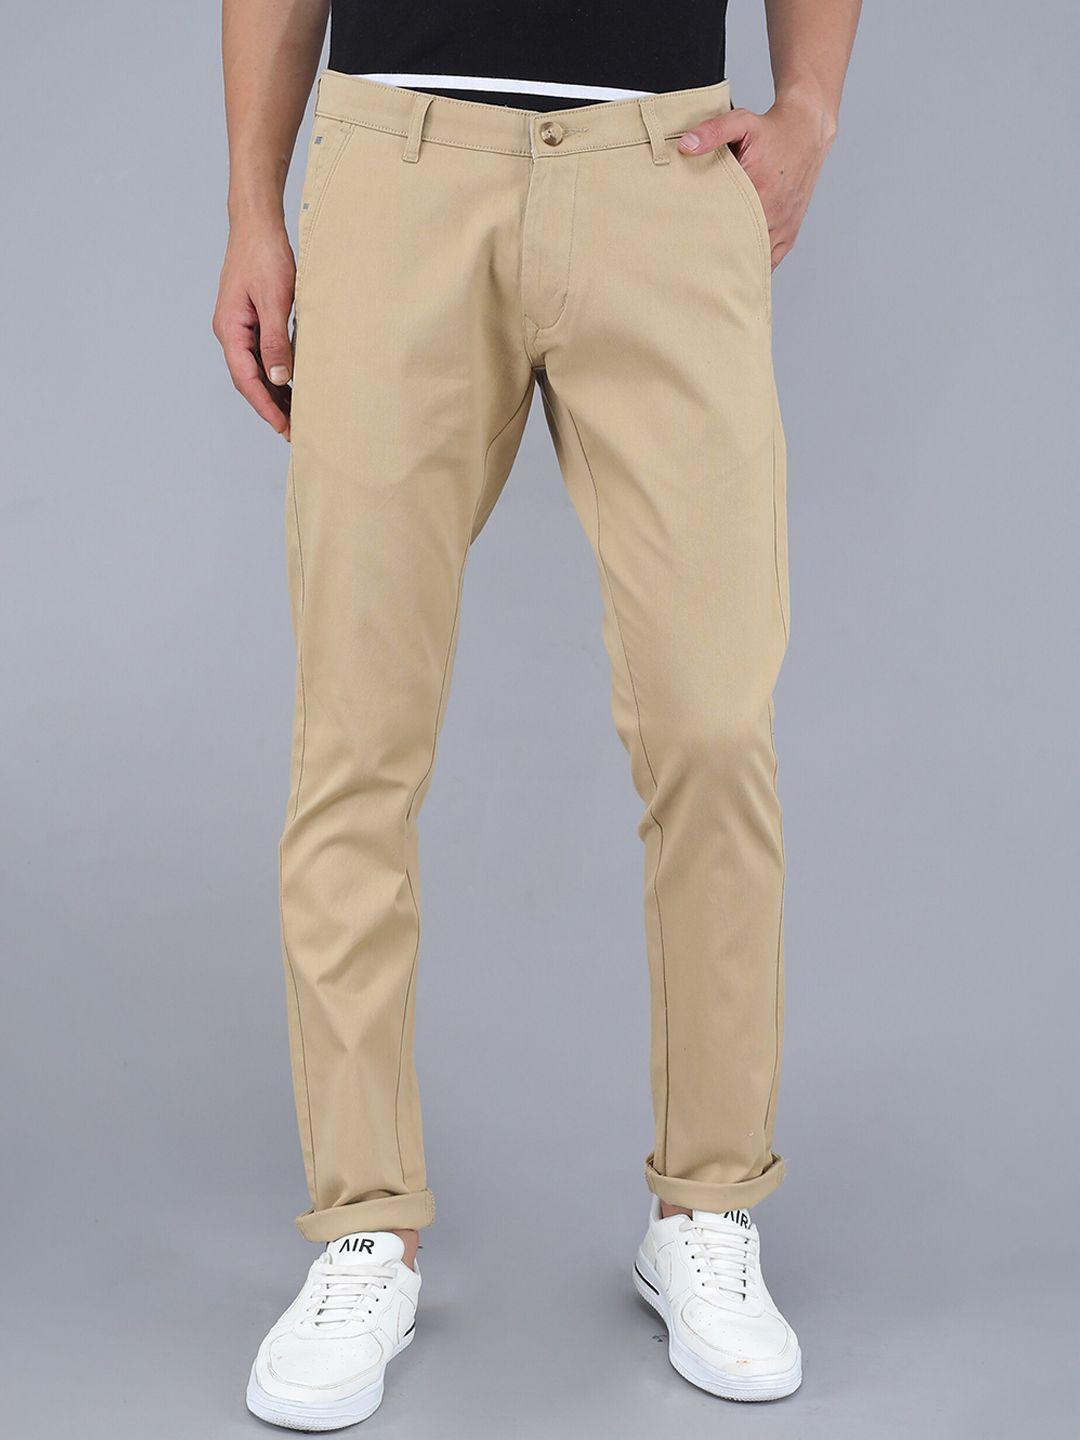 tqs men beige solid pure cotton trousers